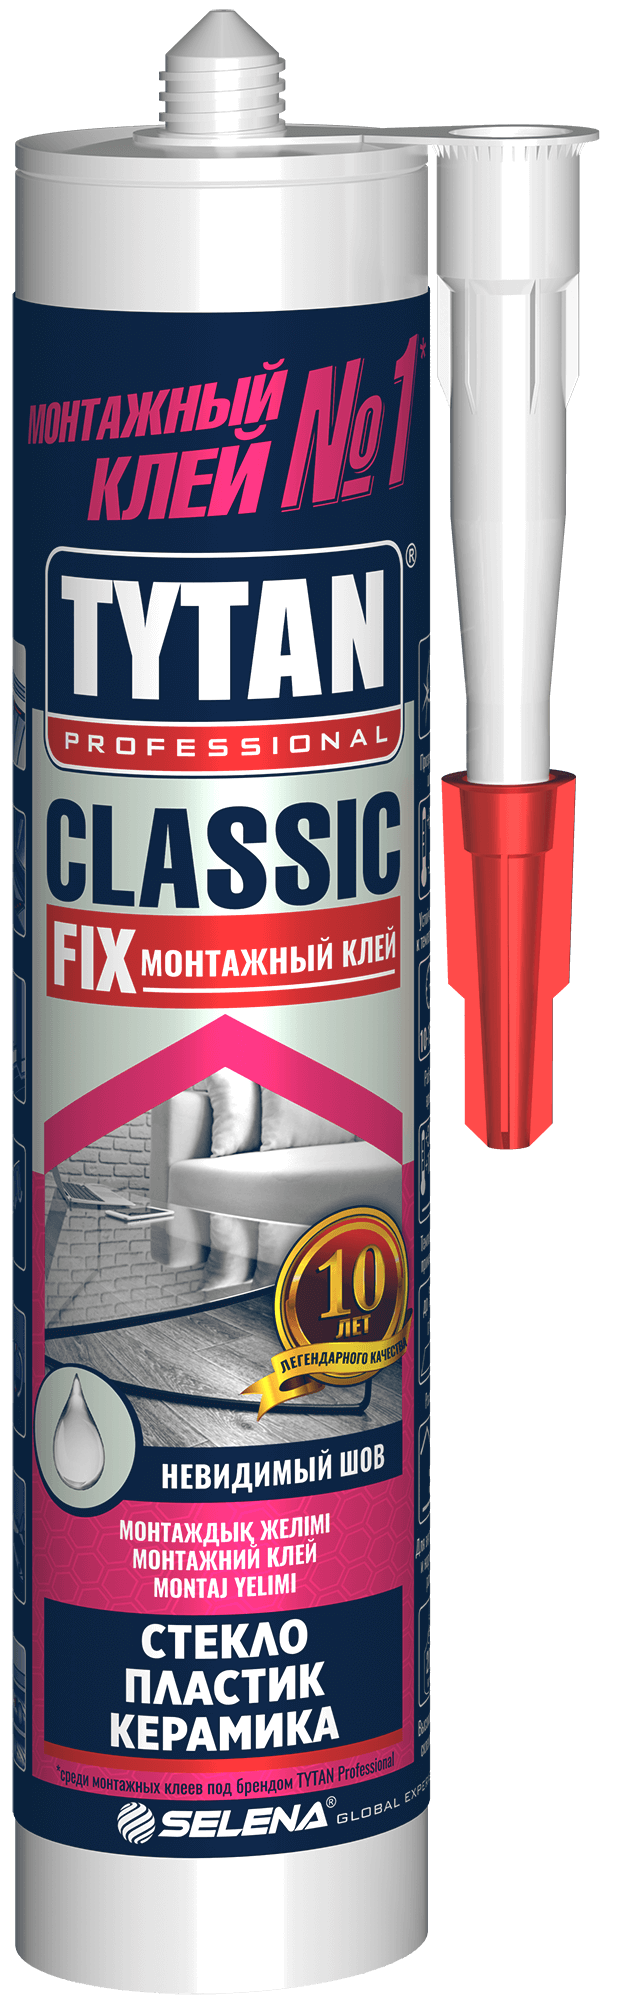 Tytan Professional Classic Fix Монтажный клей, 310 мл, прозрачный (12 шт.)